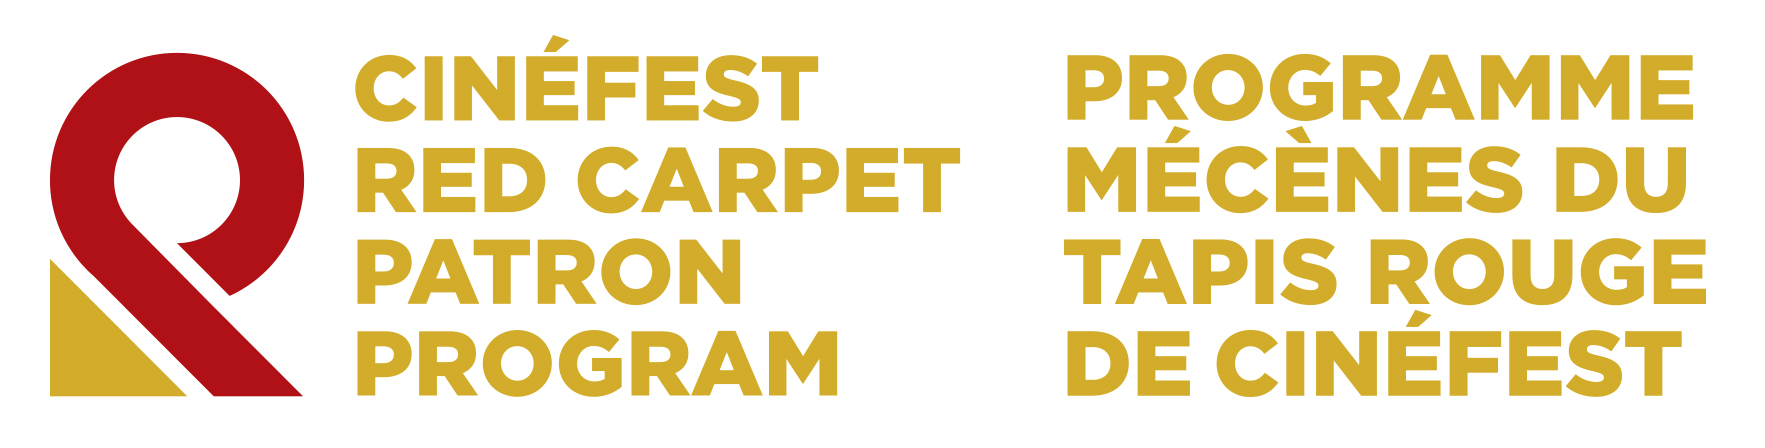 Red Carpet Patron Logo